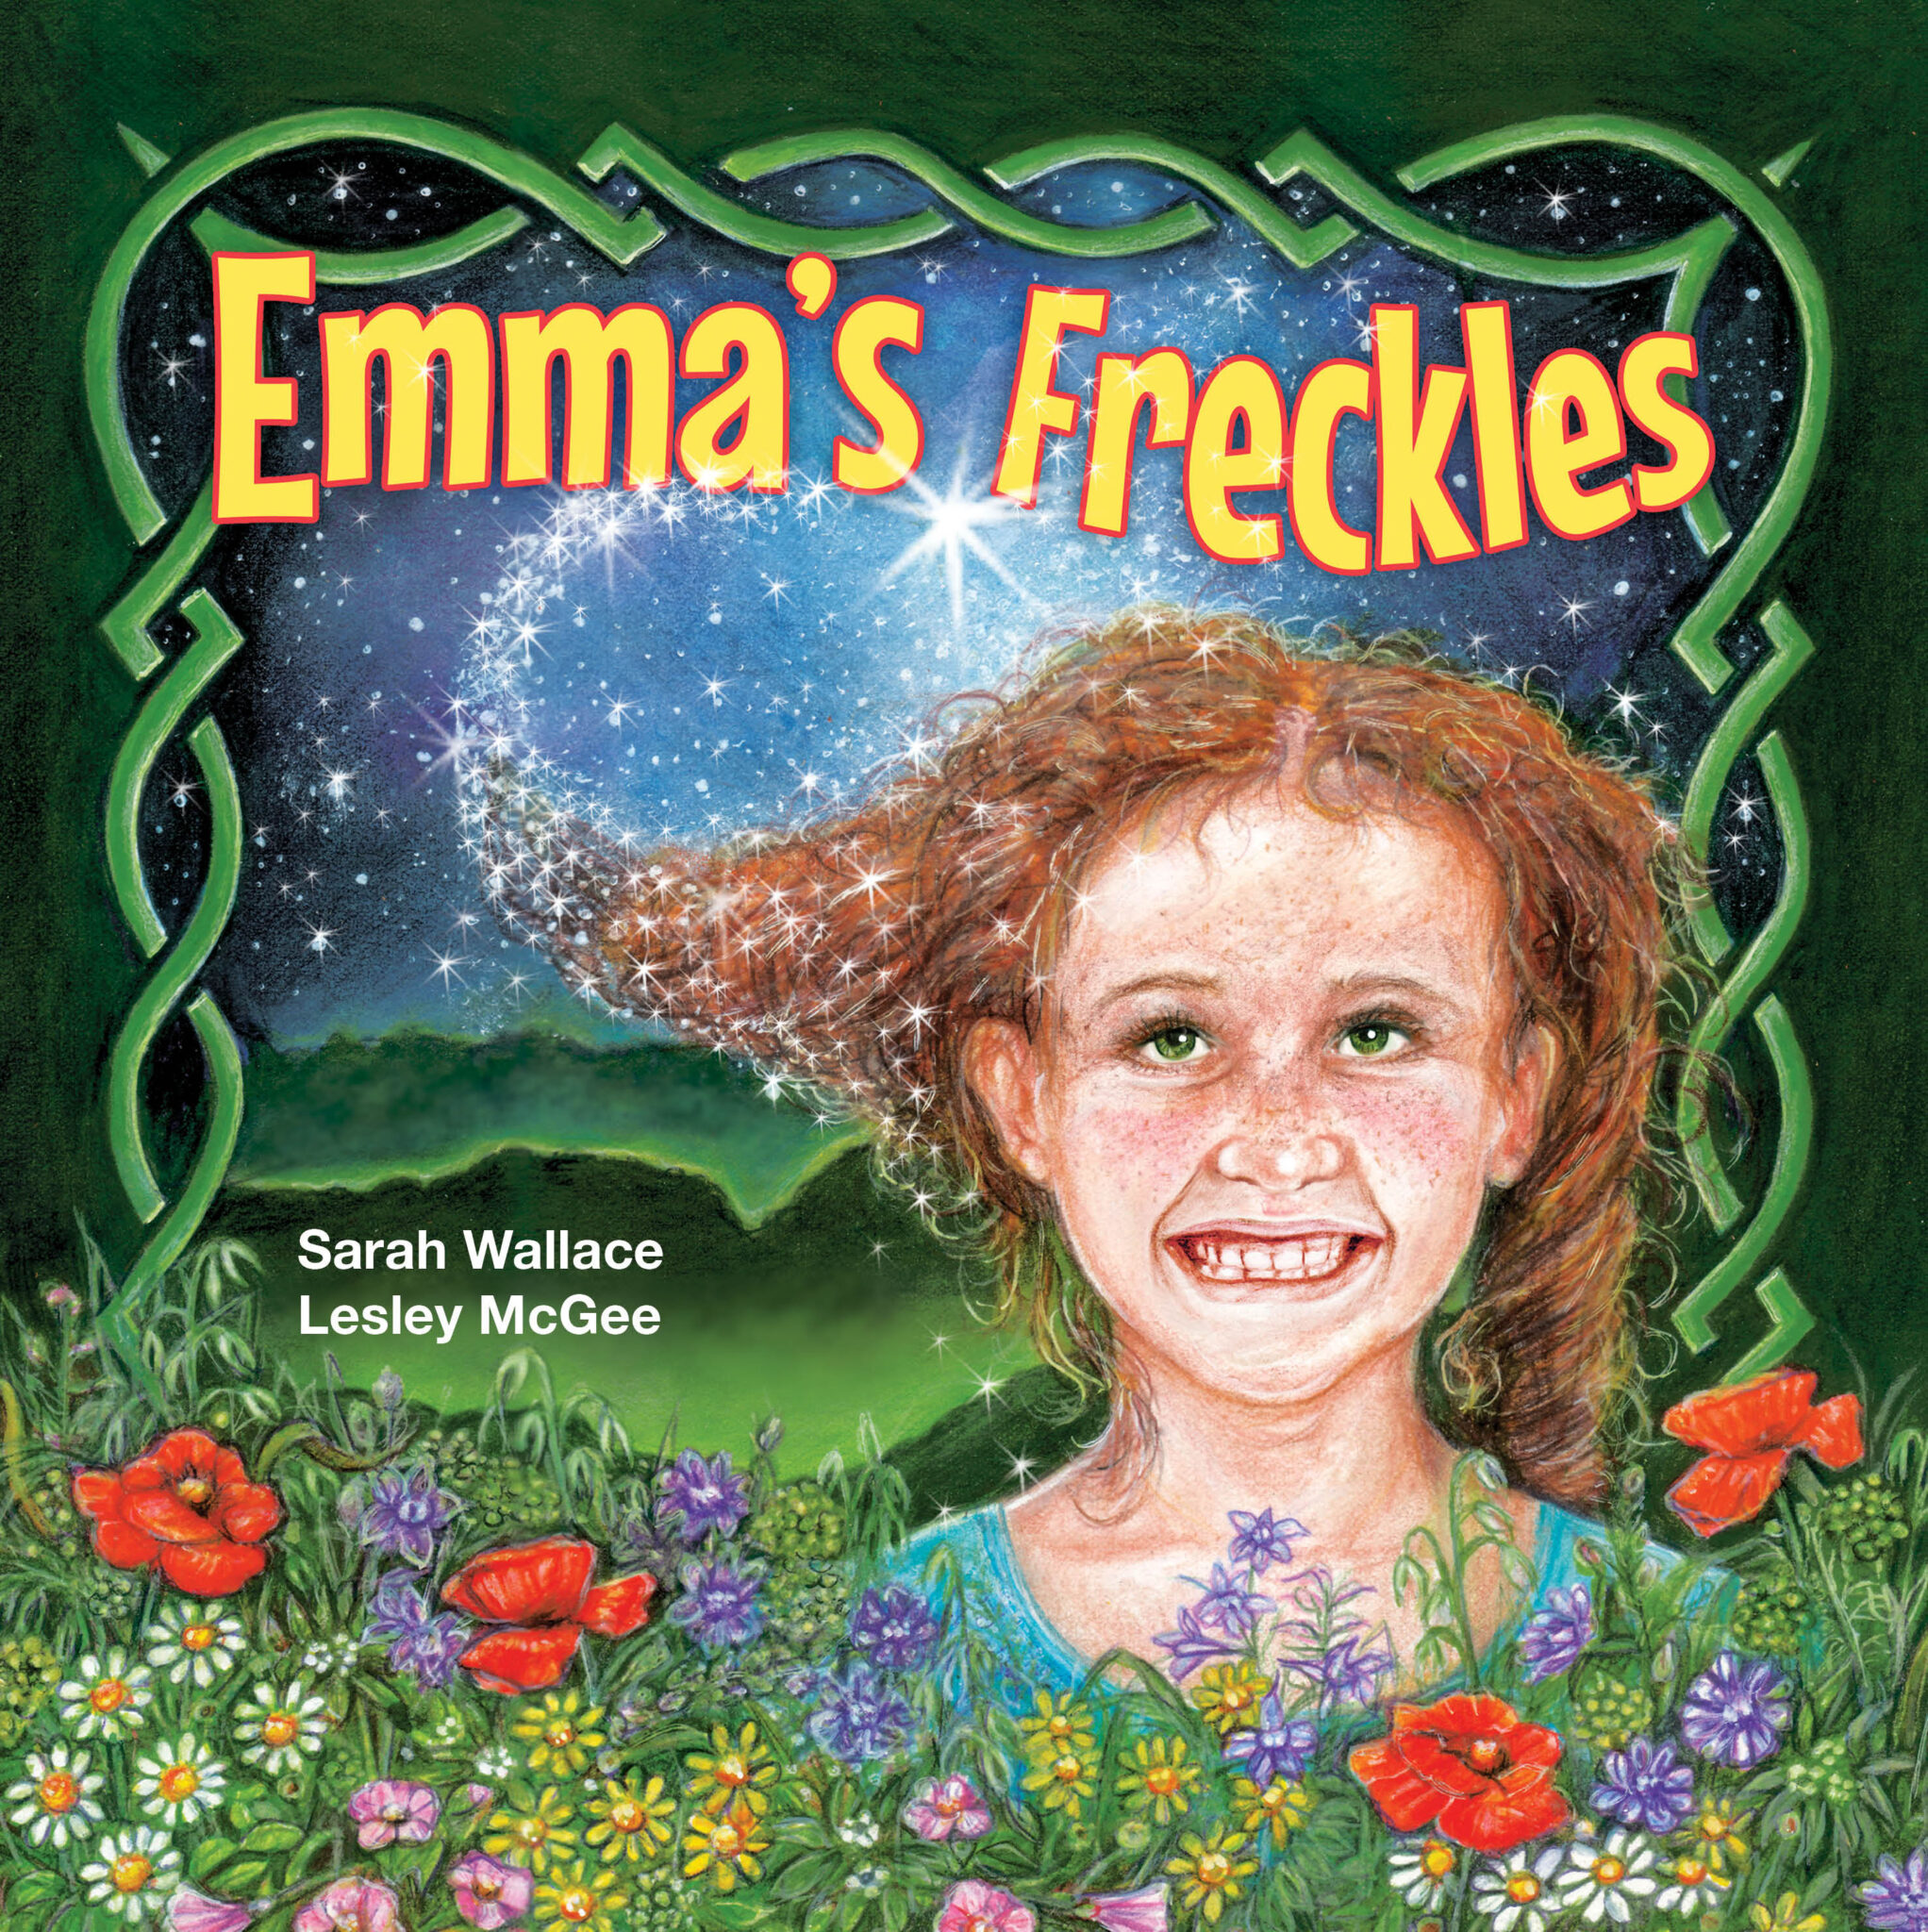 Emma's Freckles